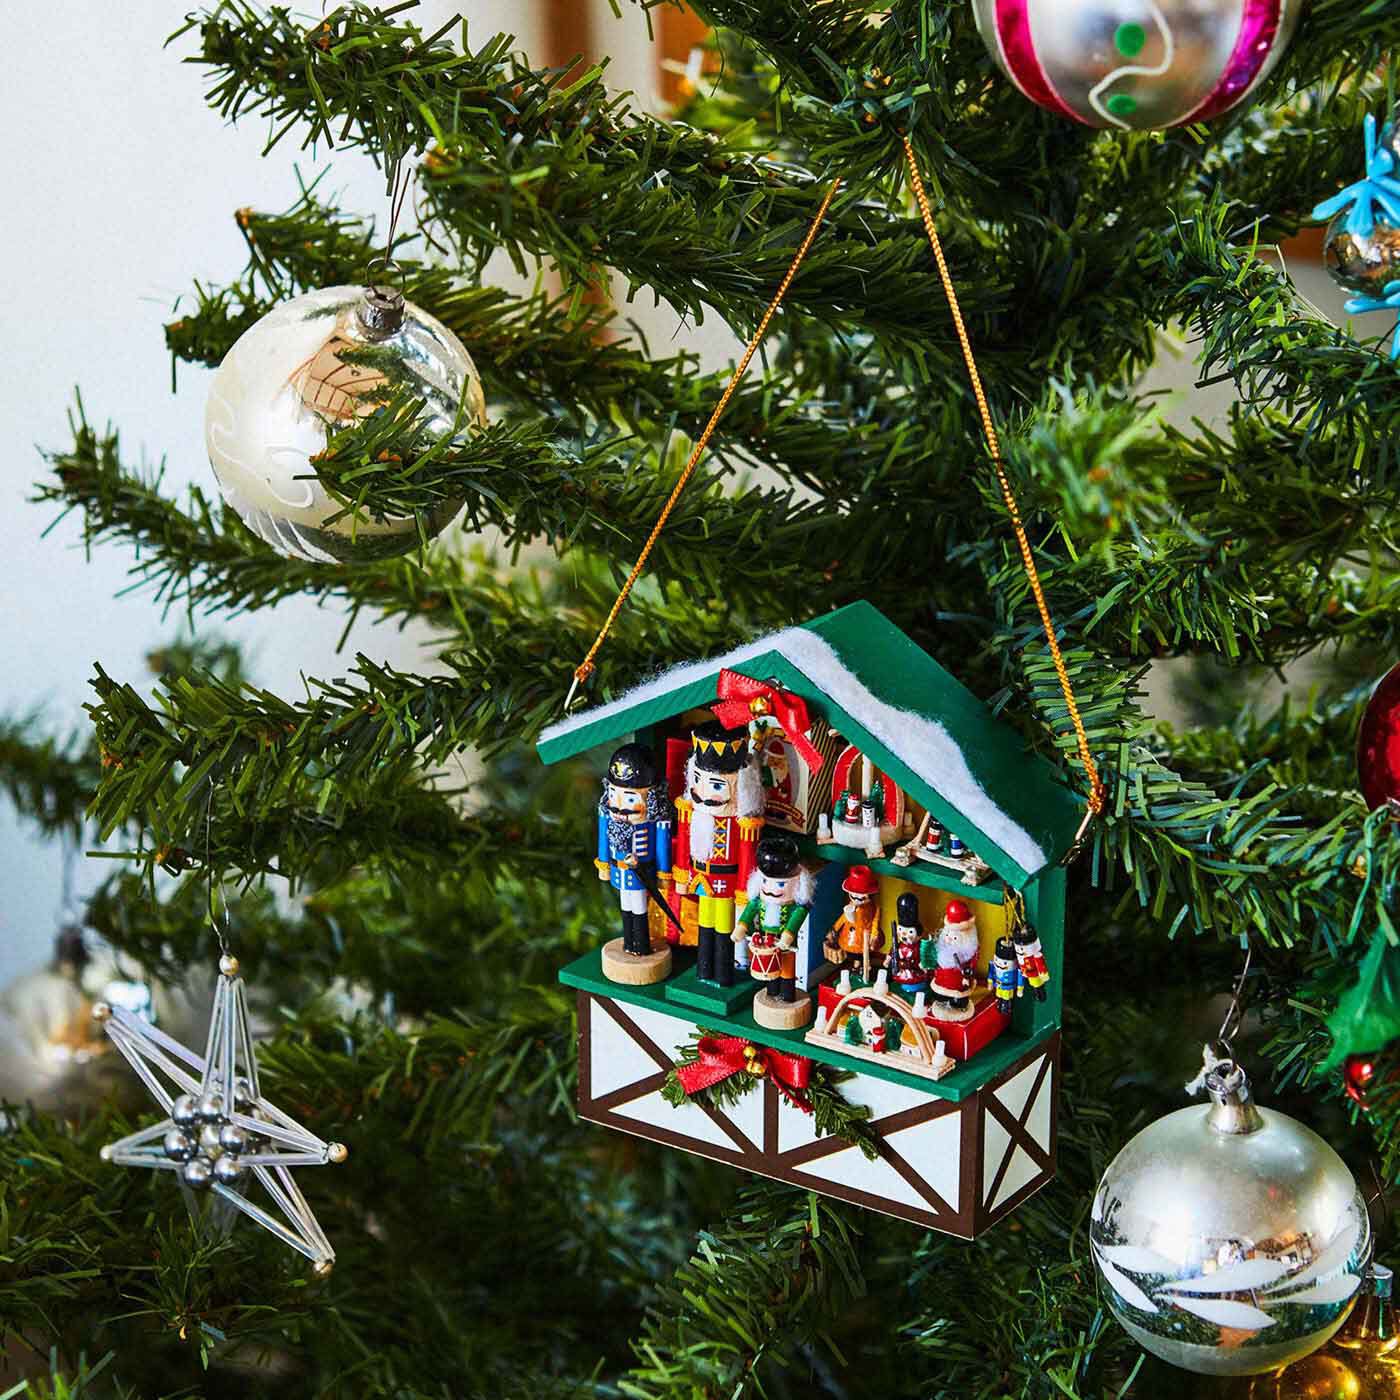 クリスマスオーナメント christmas ornament ミニチュア 通販